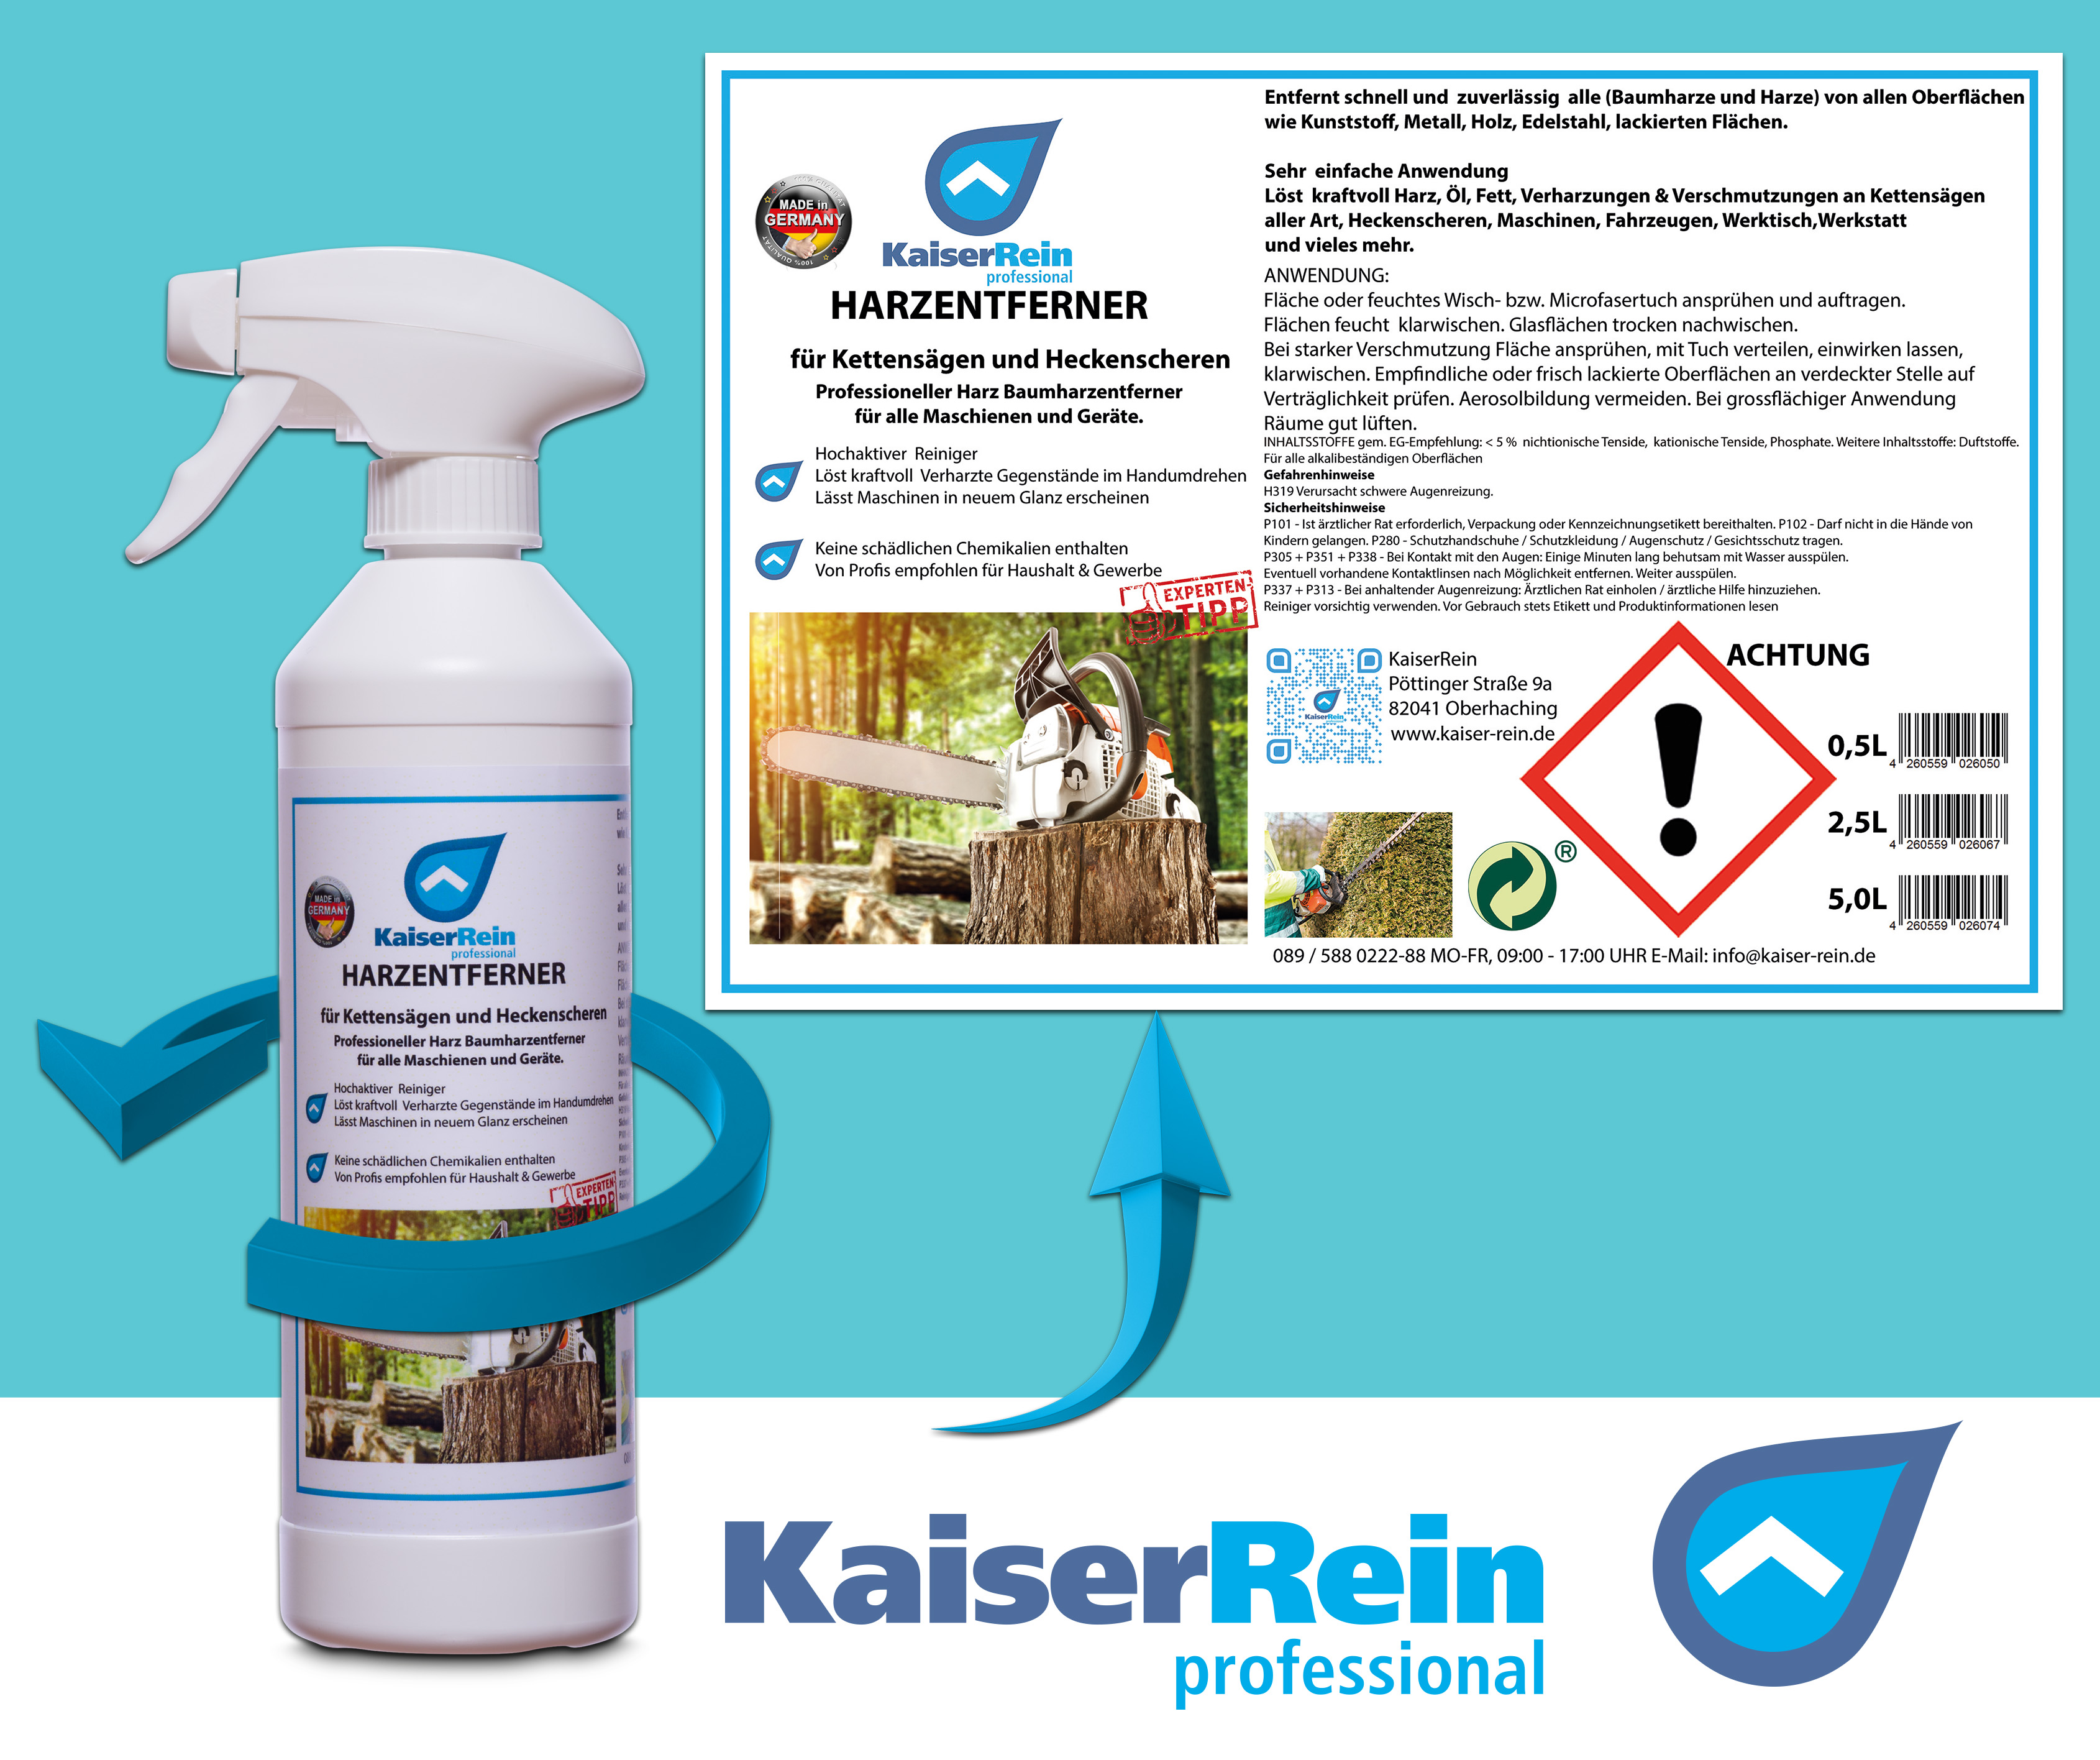 Harzentferner / Baumharzentfernerfür 0,5 L Spray Kettensägen, Motorsägen, Heckenscheren & Maschinen